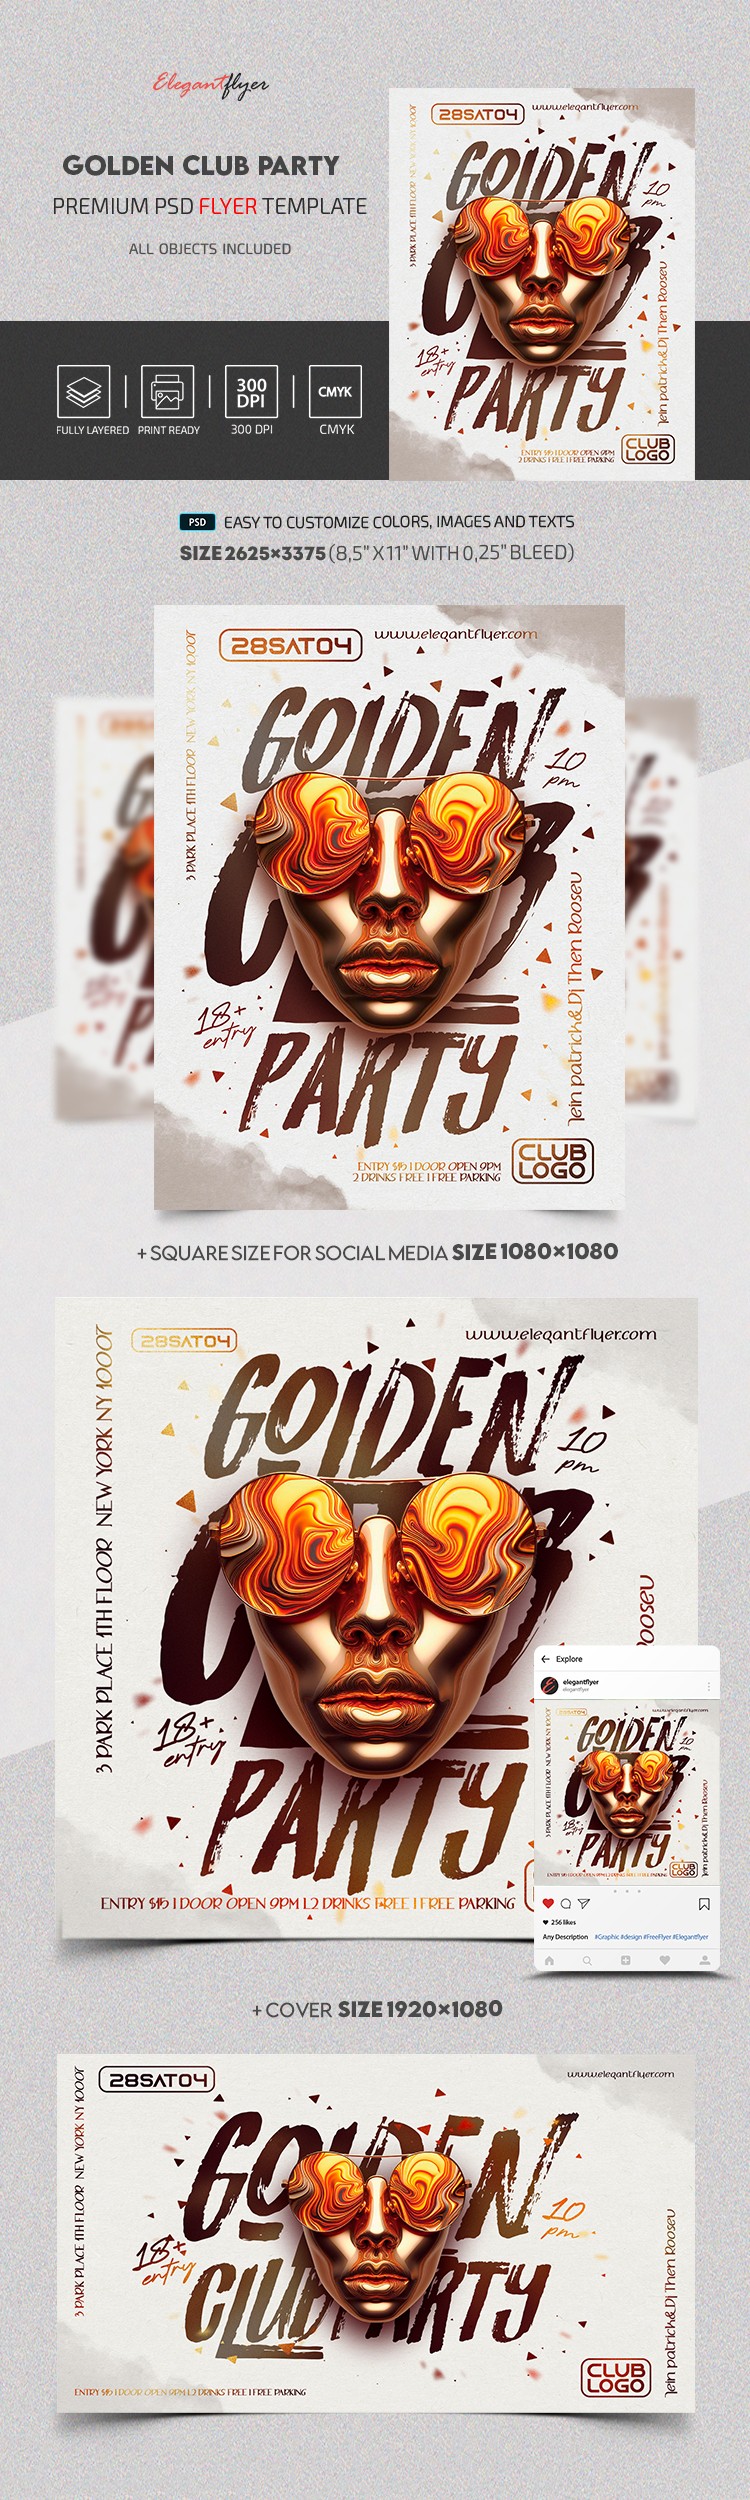 Goldene Club Party by ElegantFlyer